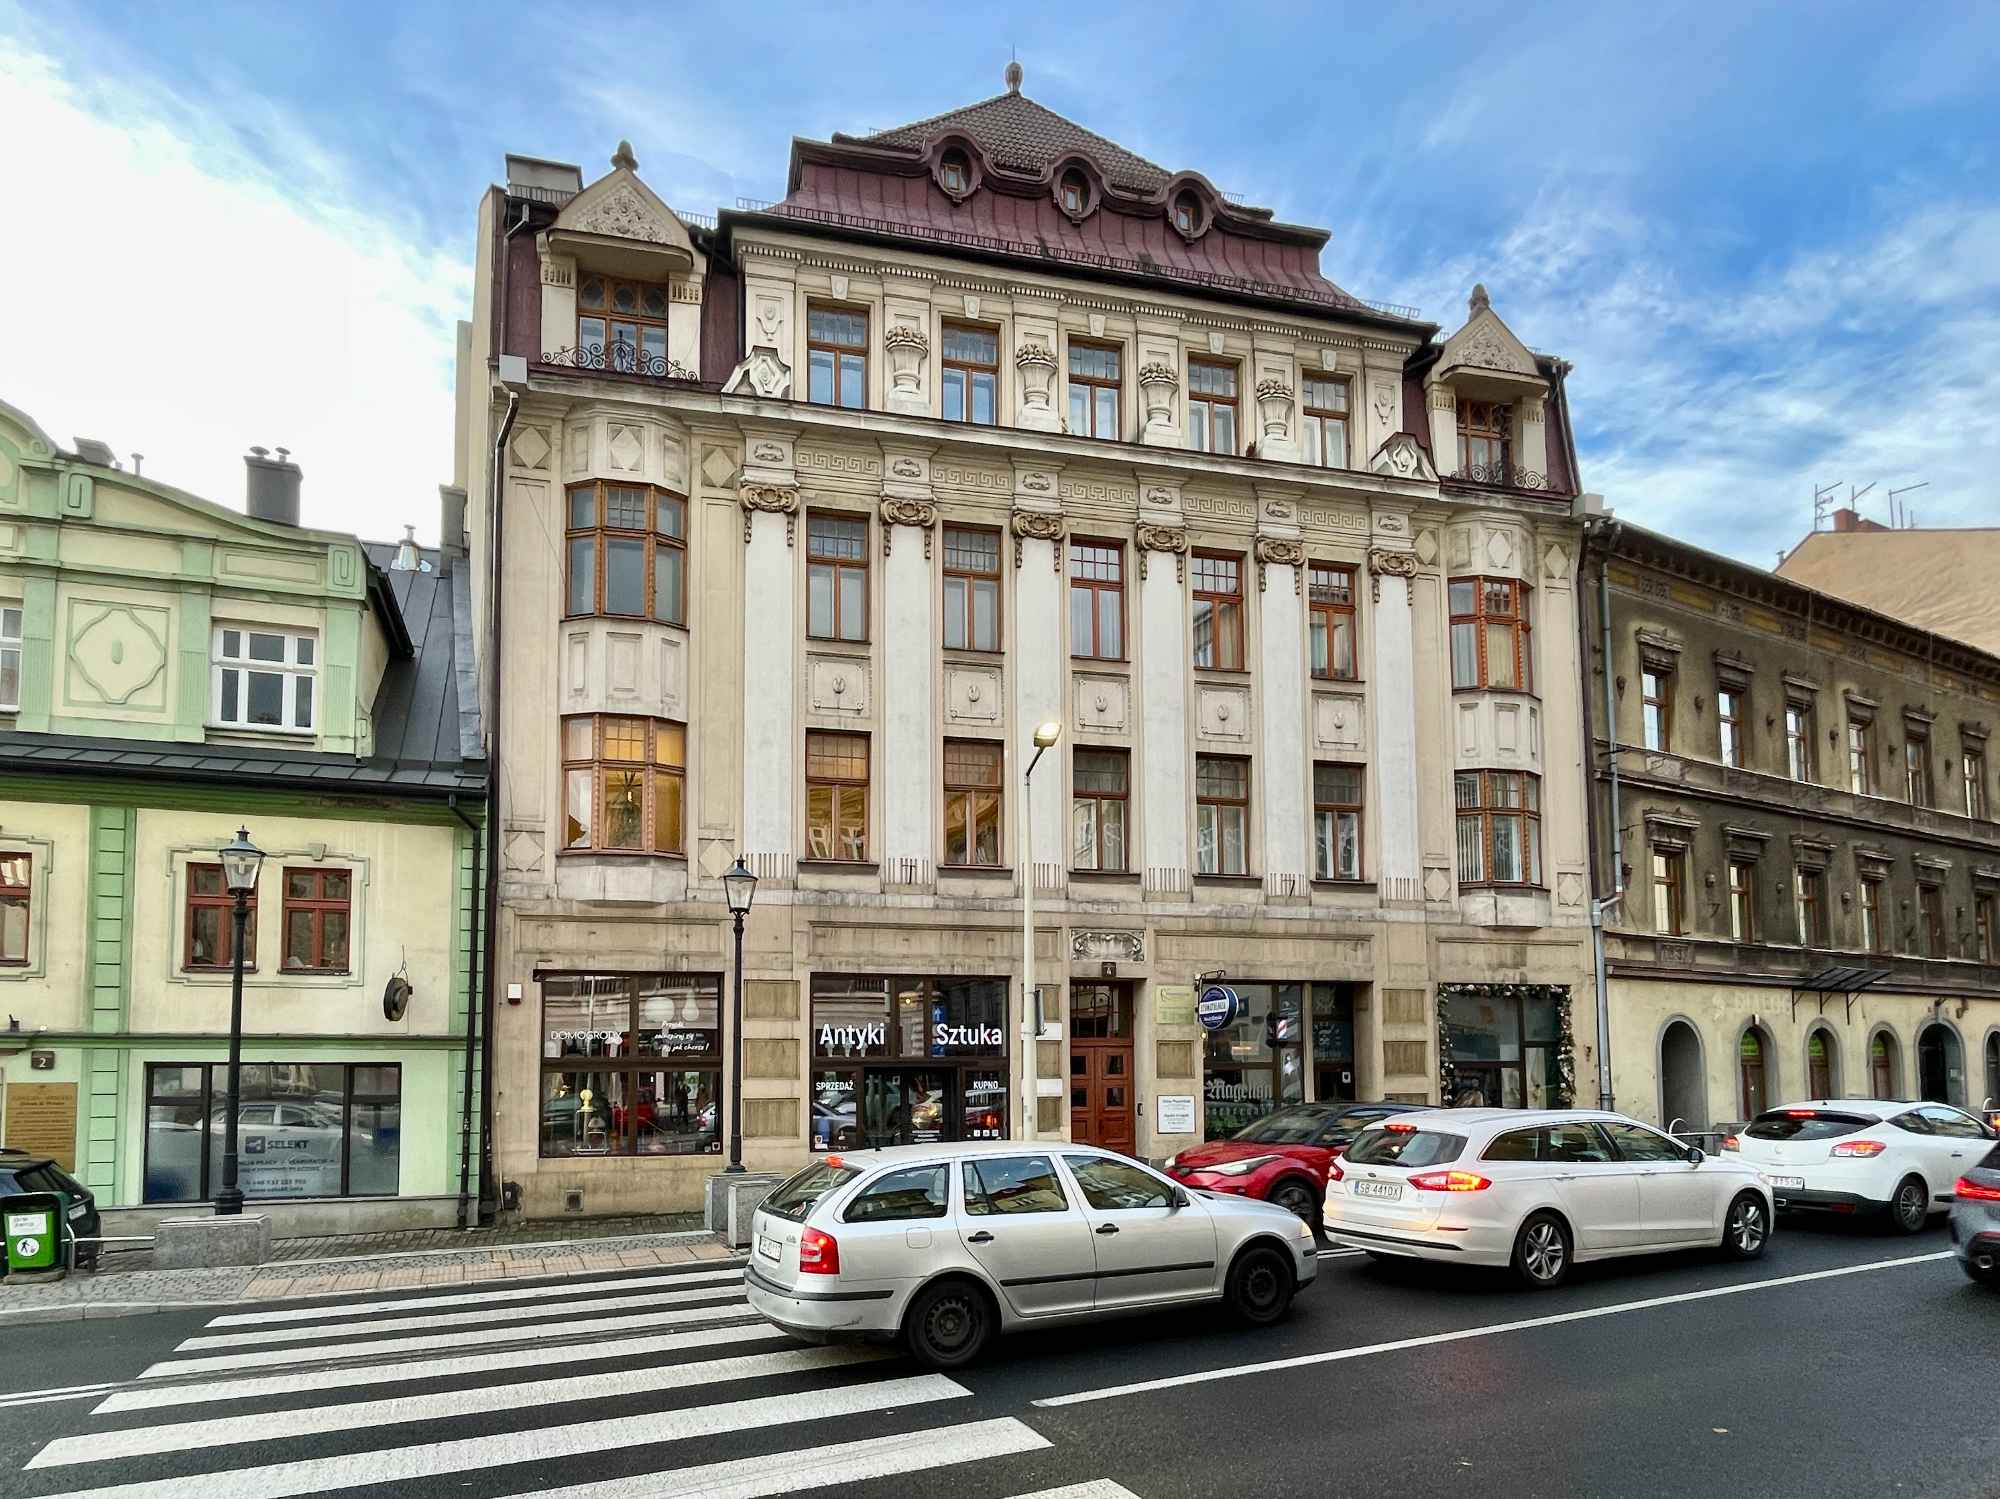 Sprzedaż i wynajem nieruchomości Bielsko-Biała |Pośrednictwo Bielsko-Biała - zdjęcie 7